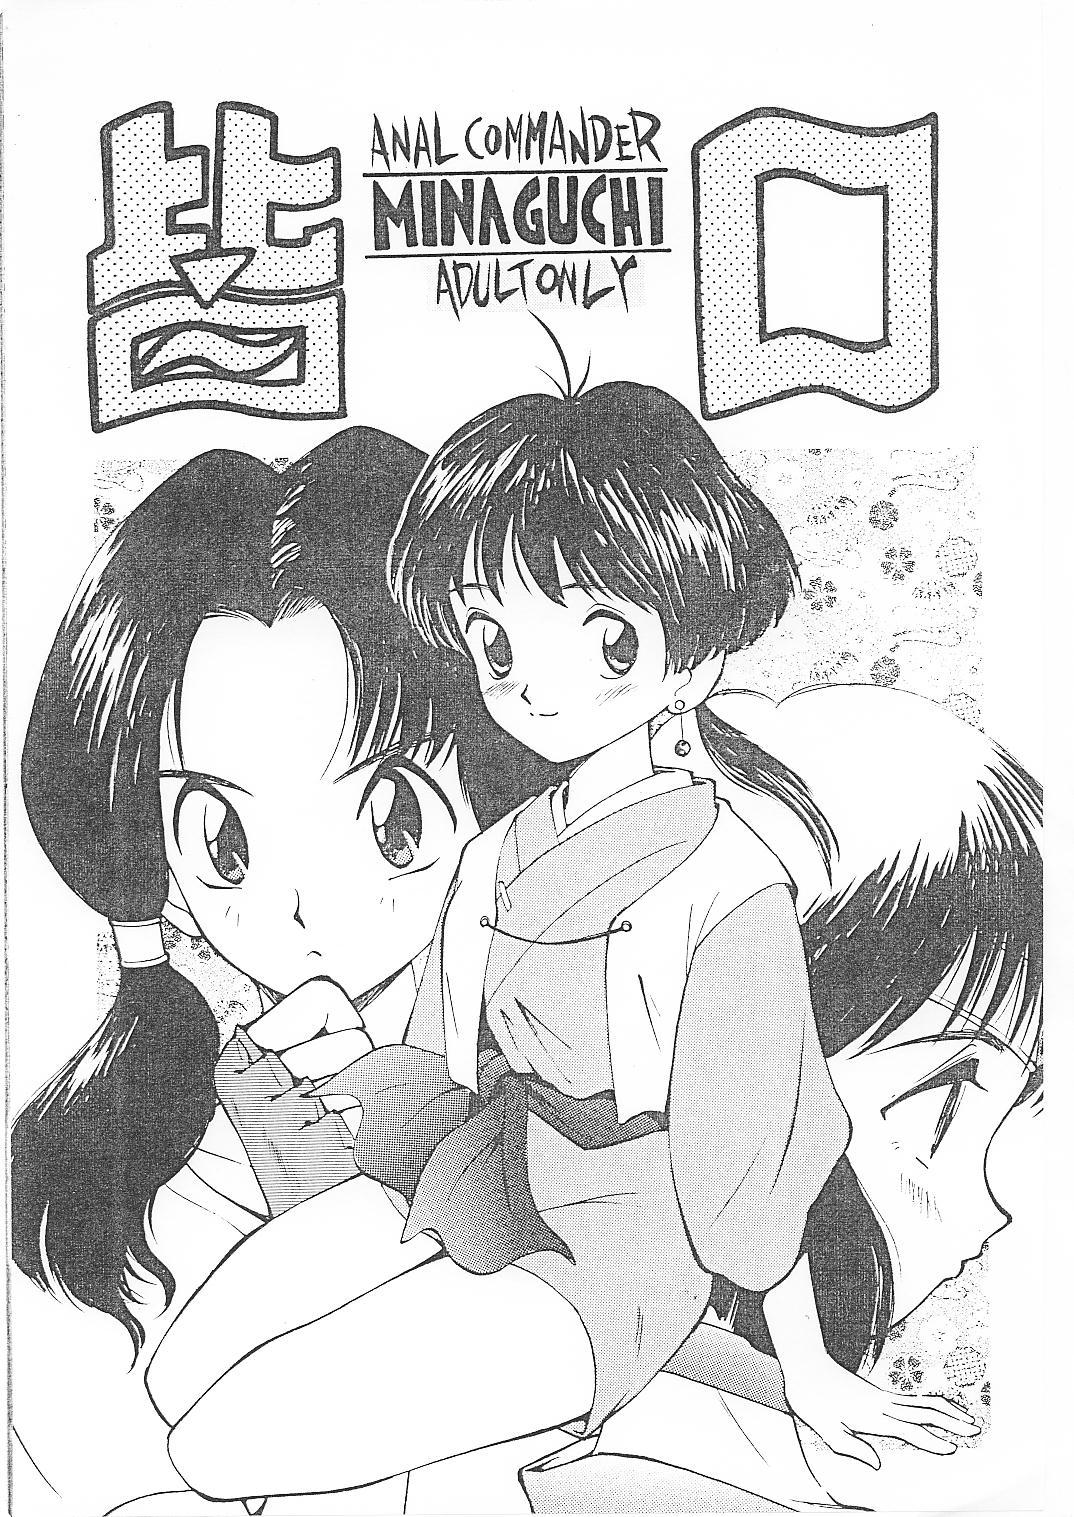 Step Sister Minaguchi - Anal Commander Minaguchi - Sailor moon Dragon ball z Final fantasy Handjob - Page 1